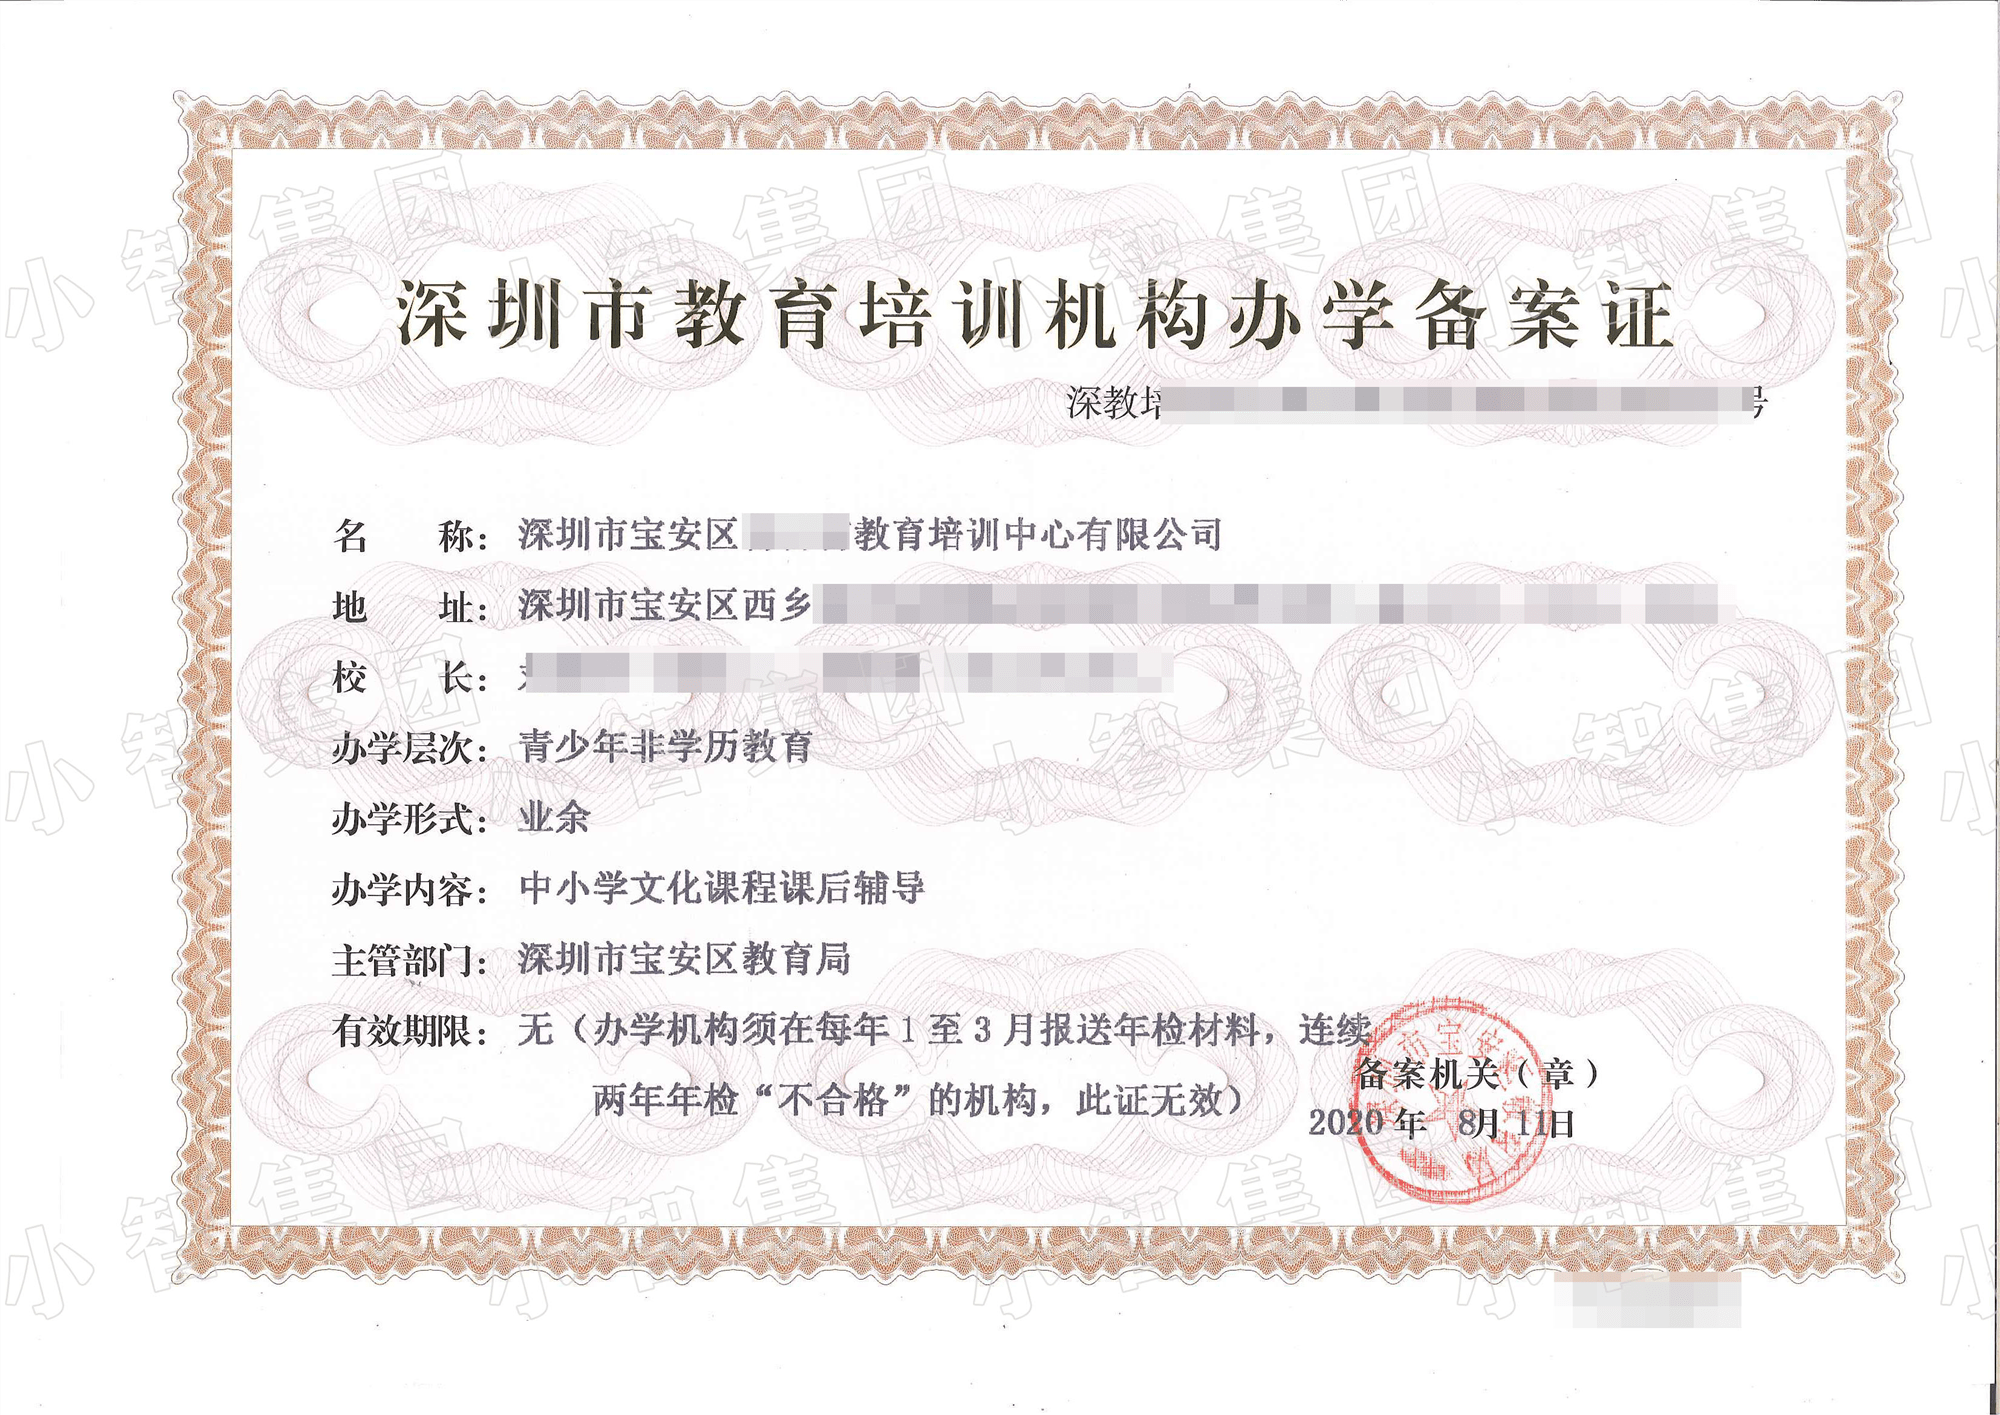 局颁发的《深圳市教育培训机构办学备案证》即《办学许可证》(特别